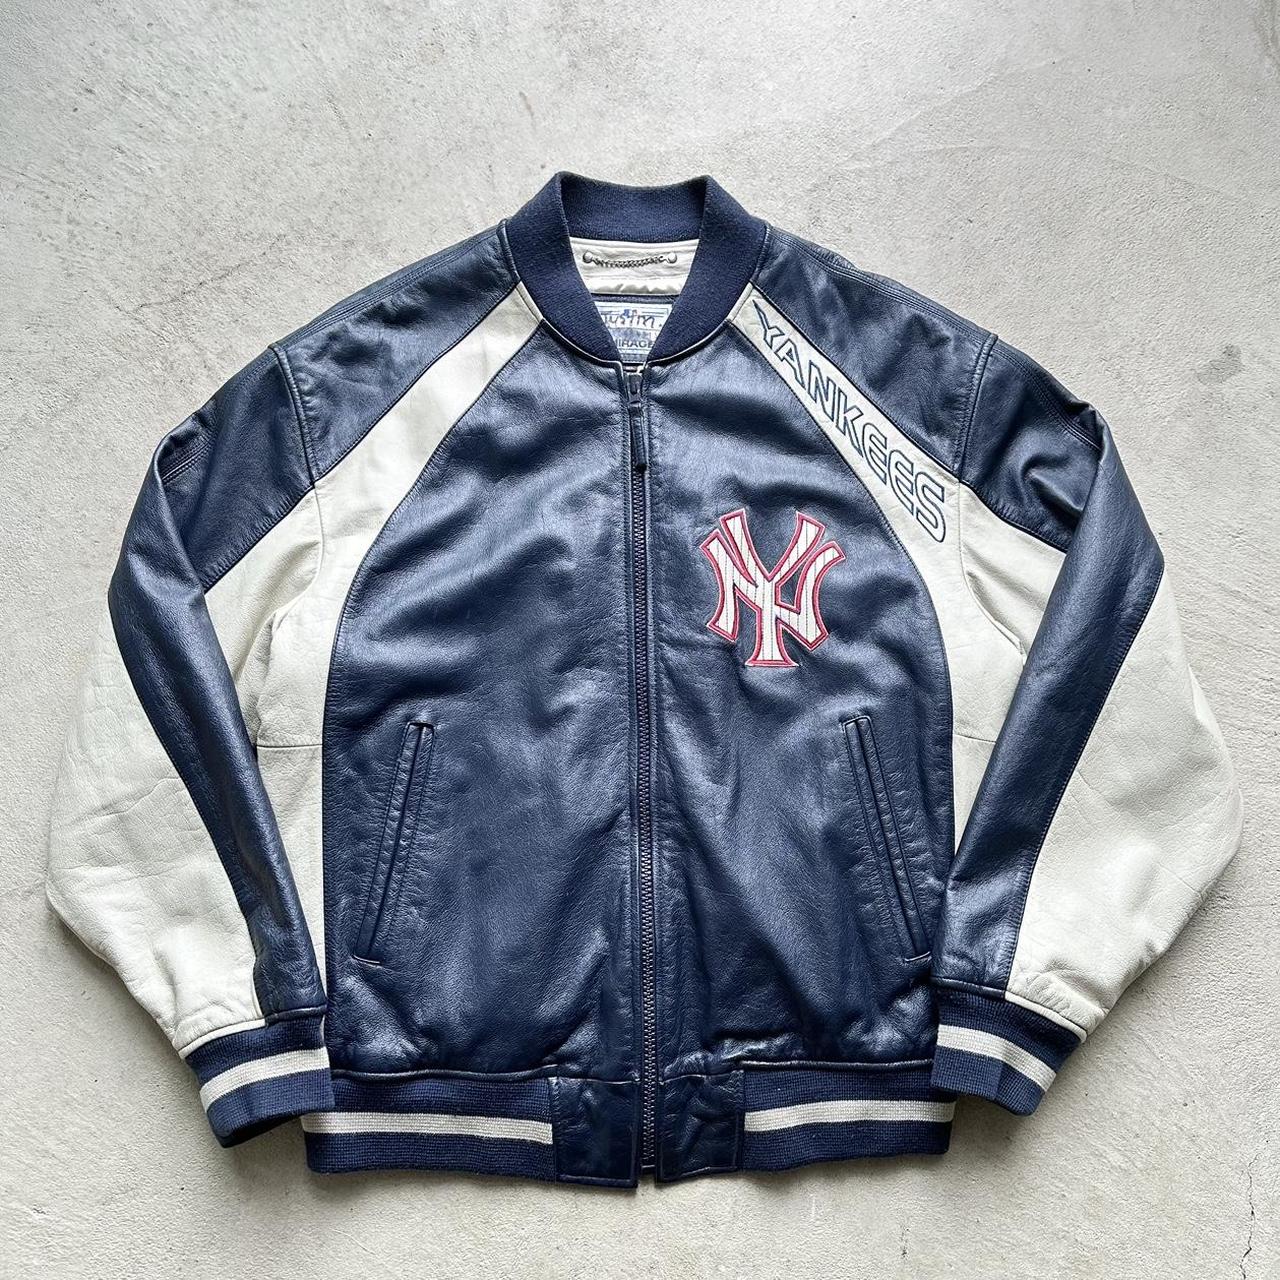 Yankees Mitchel & Ness Jacket CoopersTown - Depop